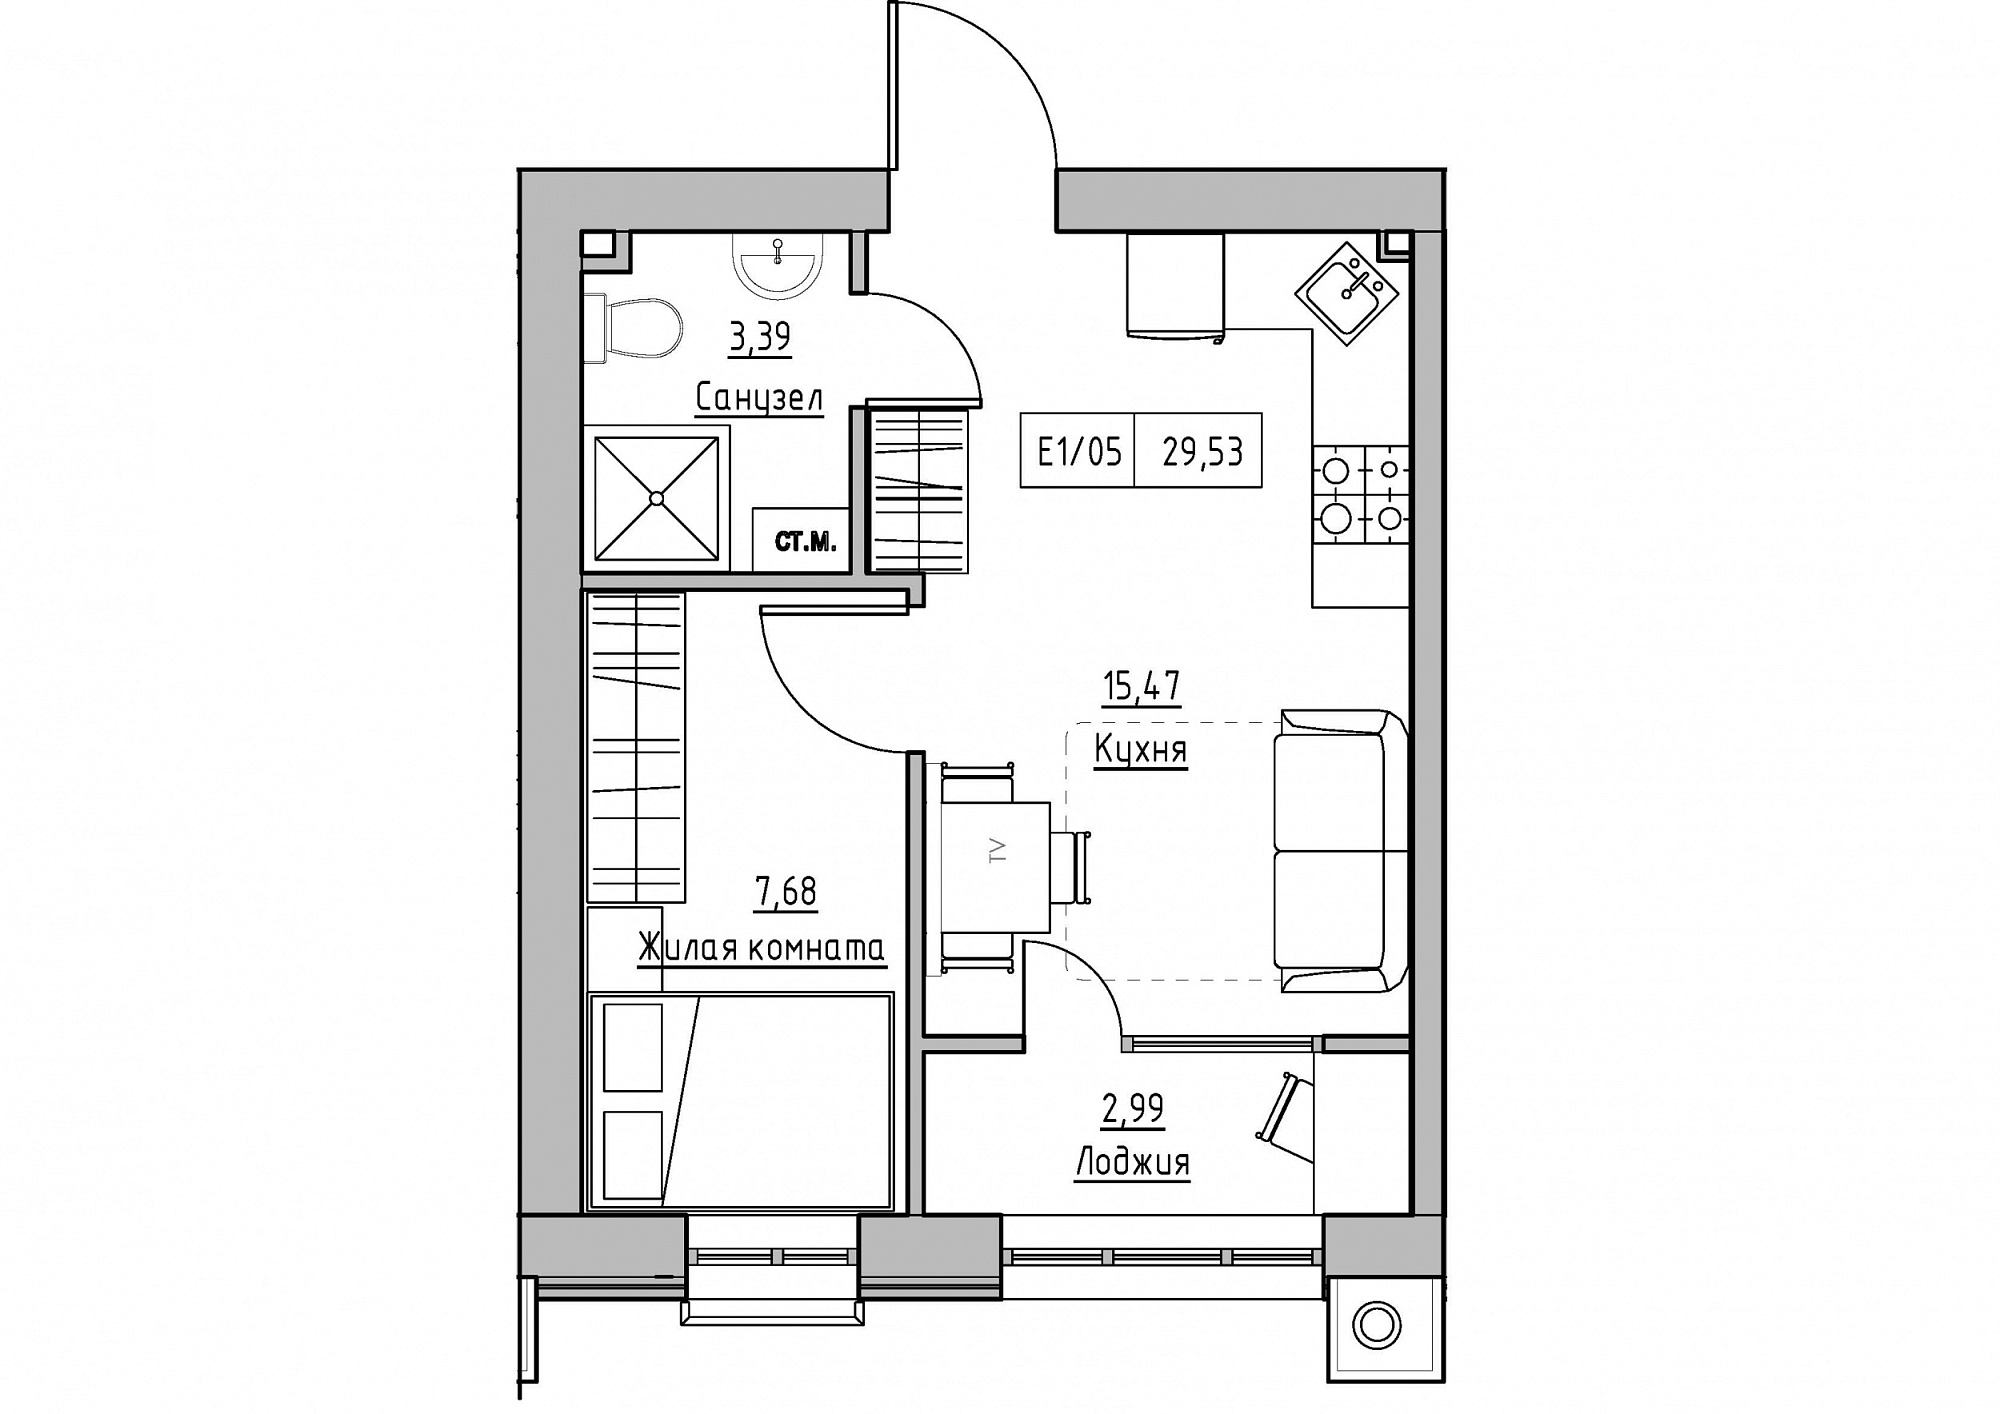 Планування 1-к квартира площею 29.53м2, KS-011-02/0010.